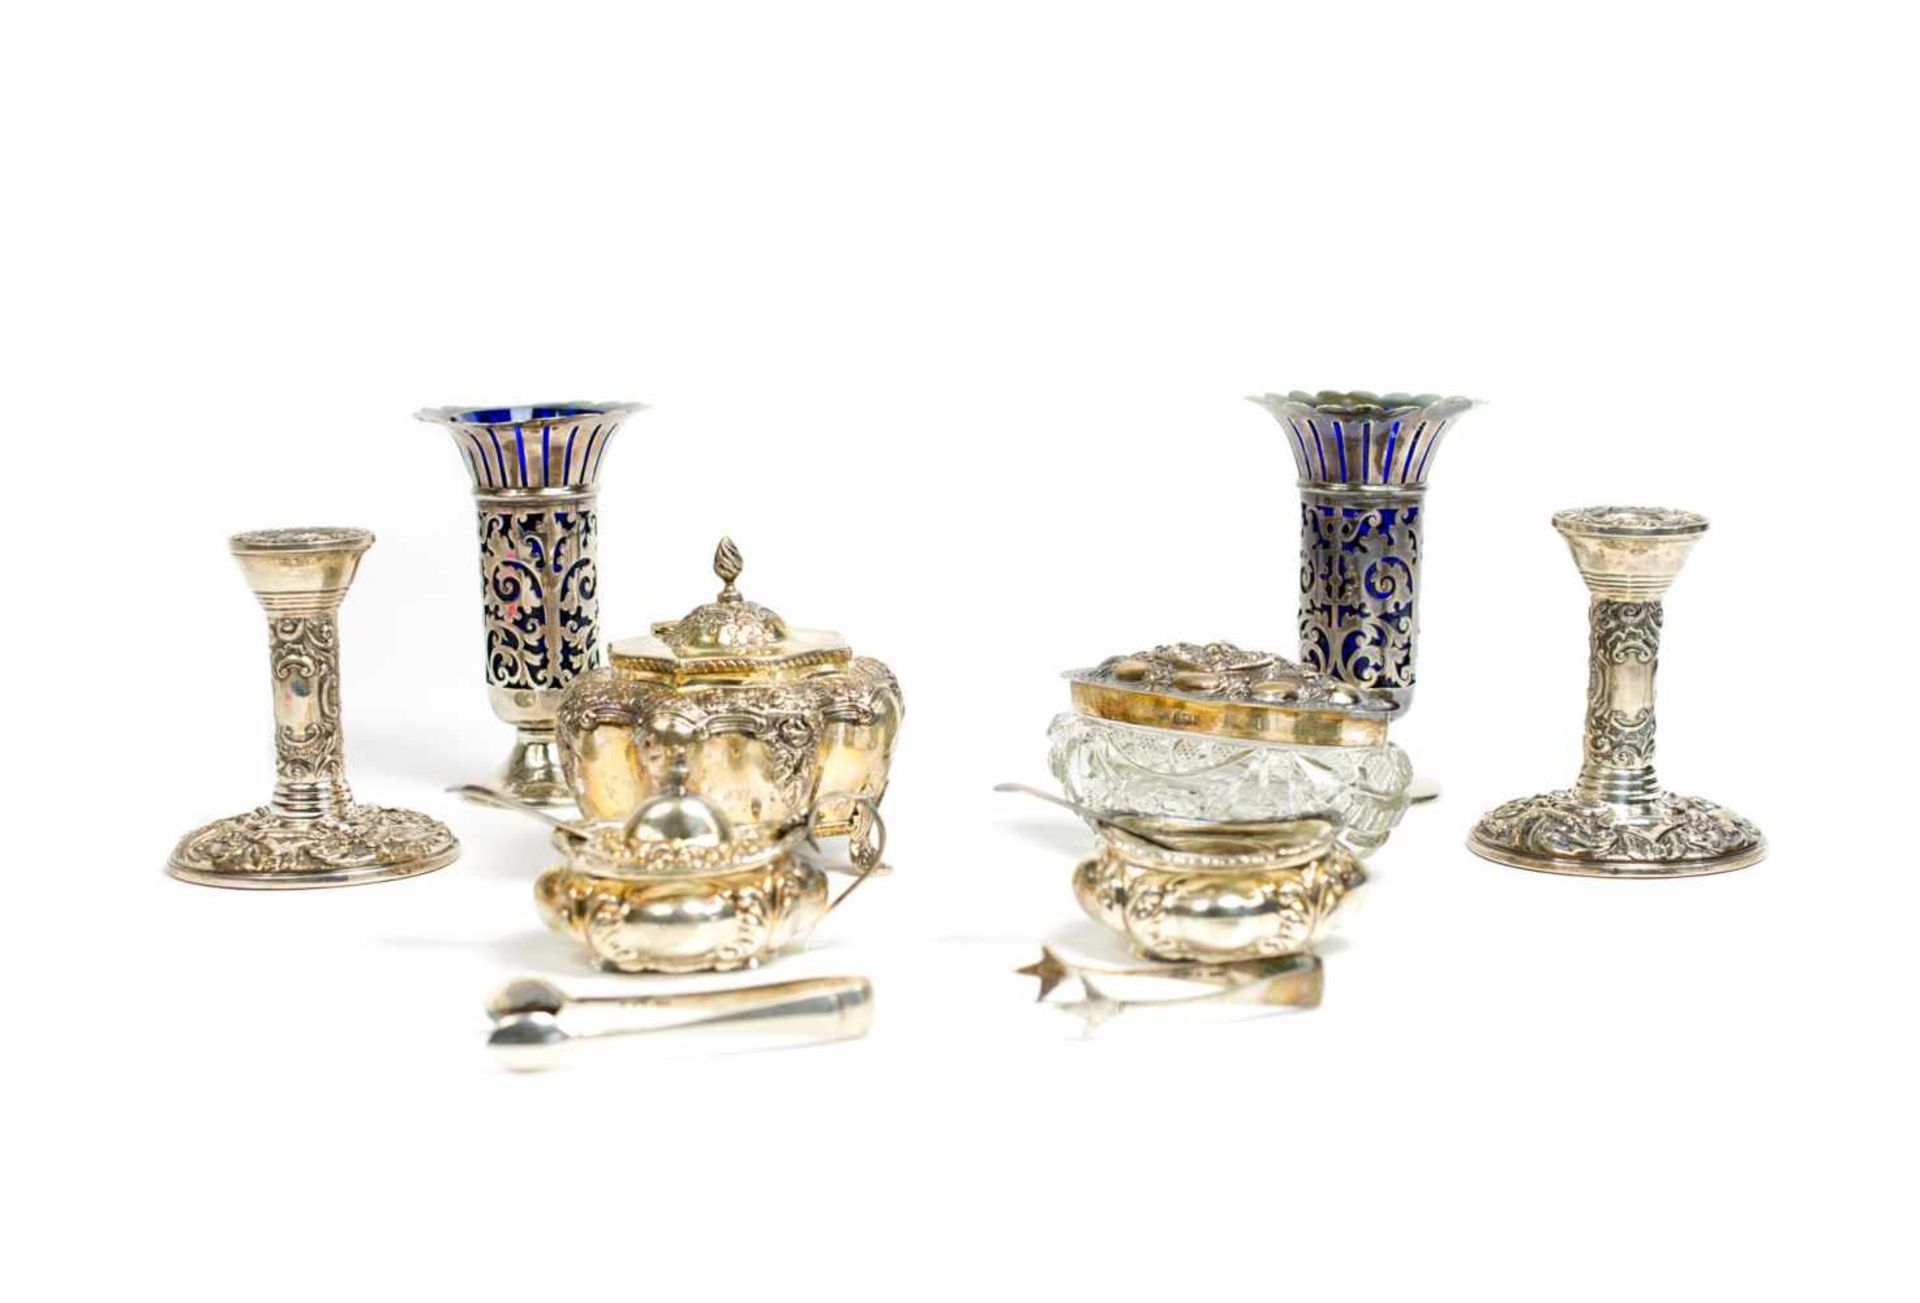 Konvolut Silberobjekte12-tlg., England, 925 Silber, zwei Vasen mit Glaseinsatz, Höhe 13 cm, zwei